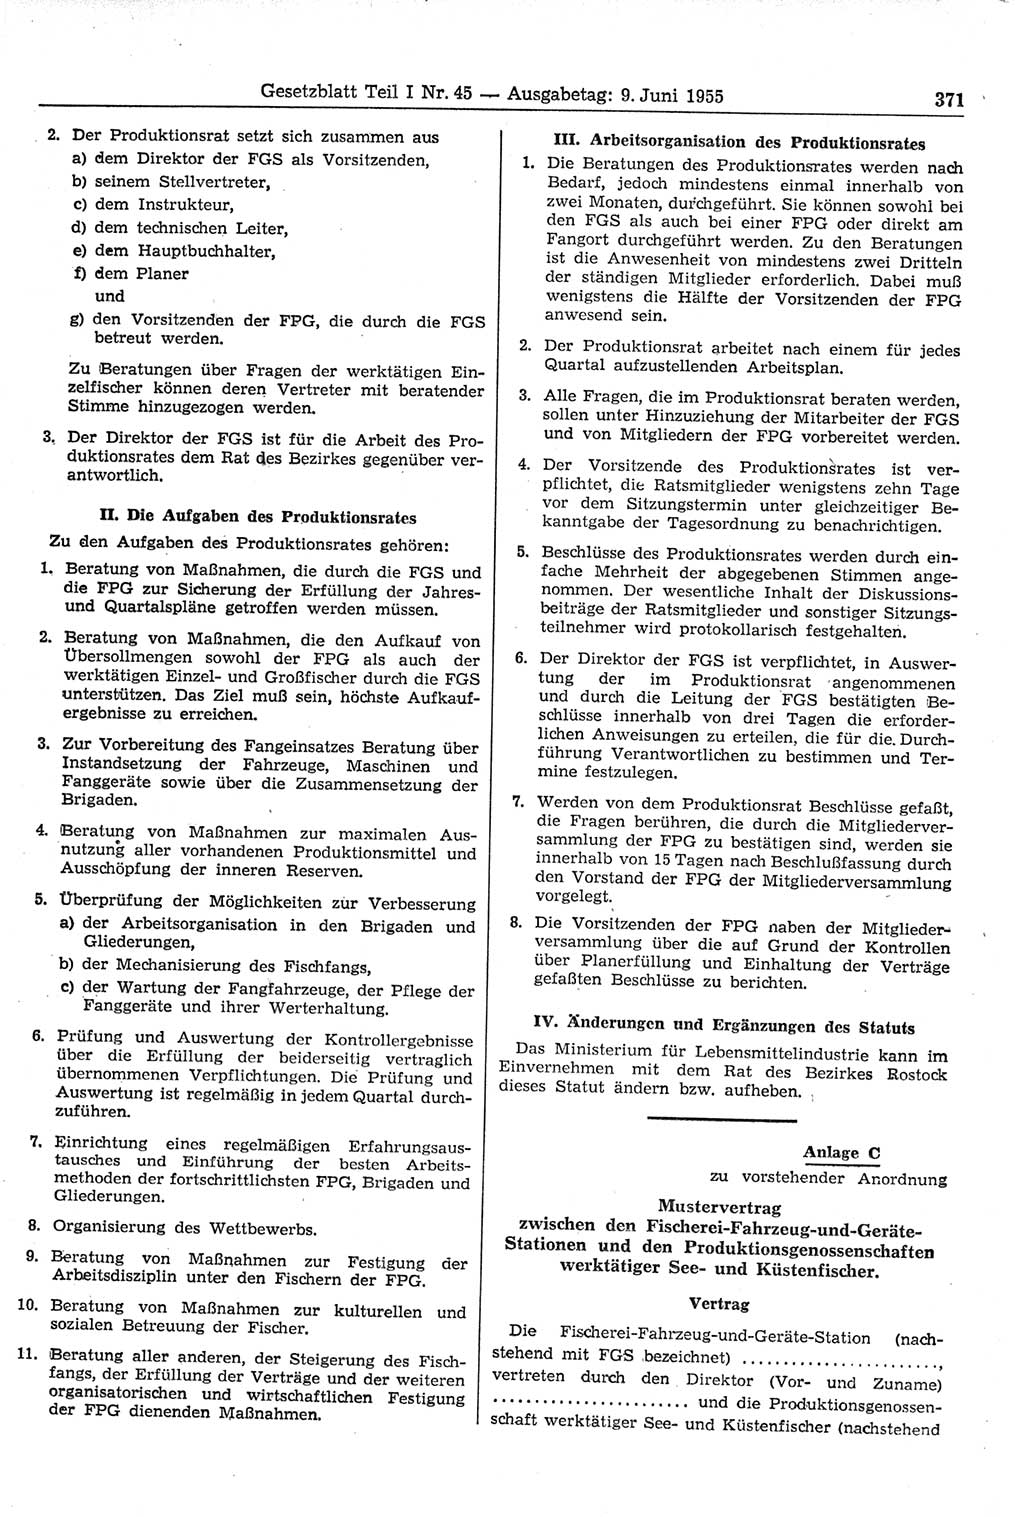 Gesetzblatt (GBl.) der Deutschen Demokratischen Republik (DDR) Teil Ⅰ 1955, Seite 371 (GBl. DDR Ⅰ 1955, S. 371)